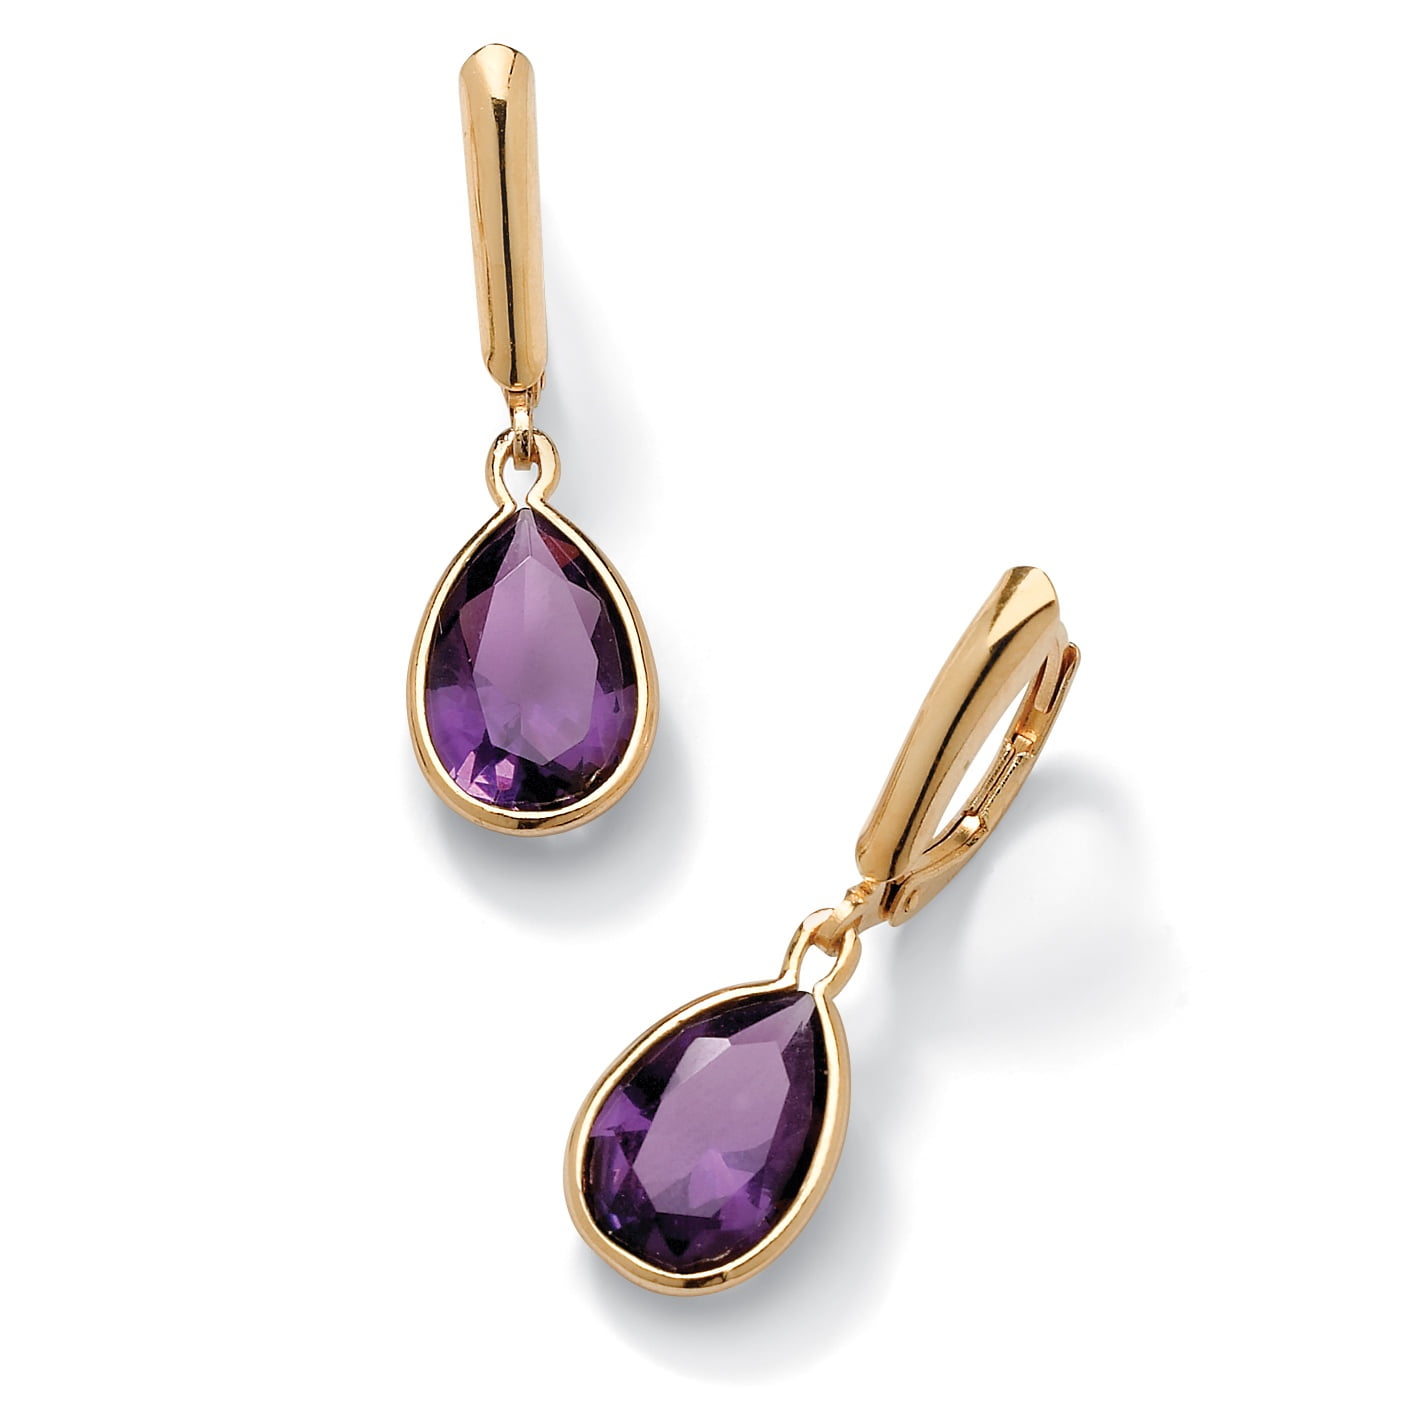 PalmBeach Jewelry - Pear-Cut Birthstone Drop Earrings in 18k Gold over Sterling Silver